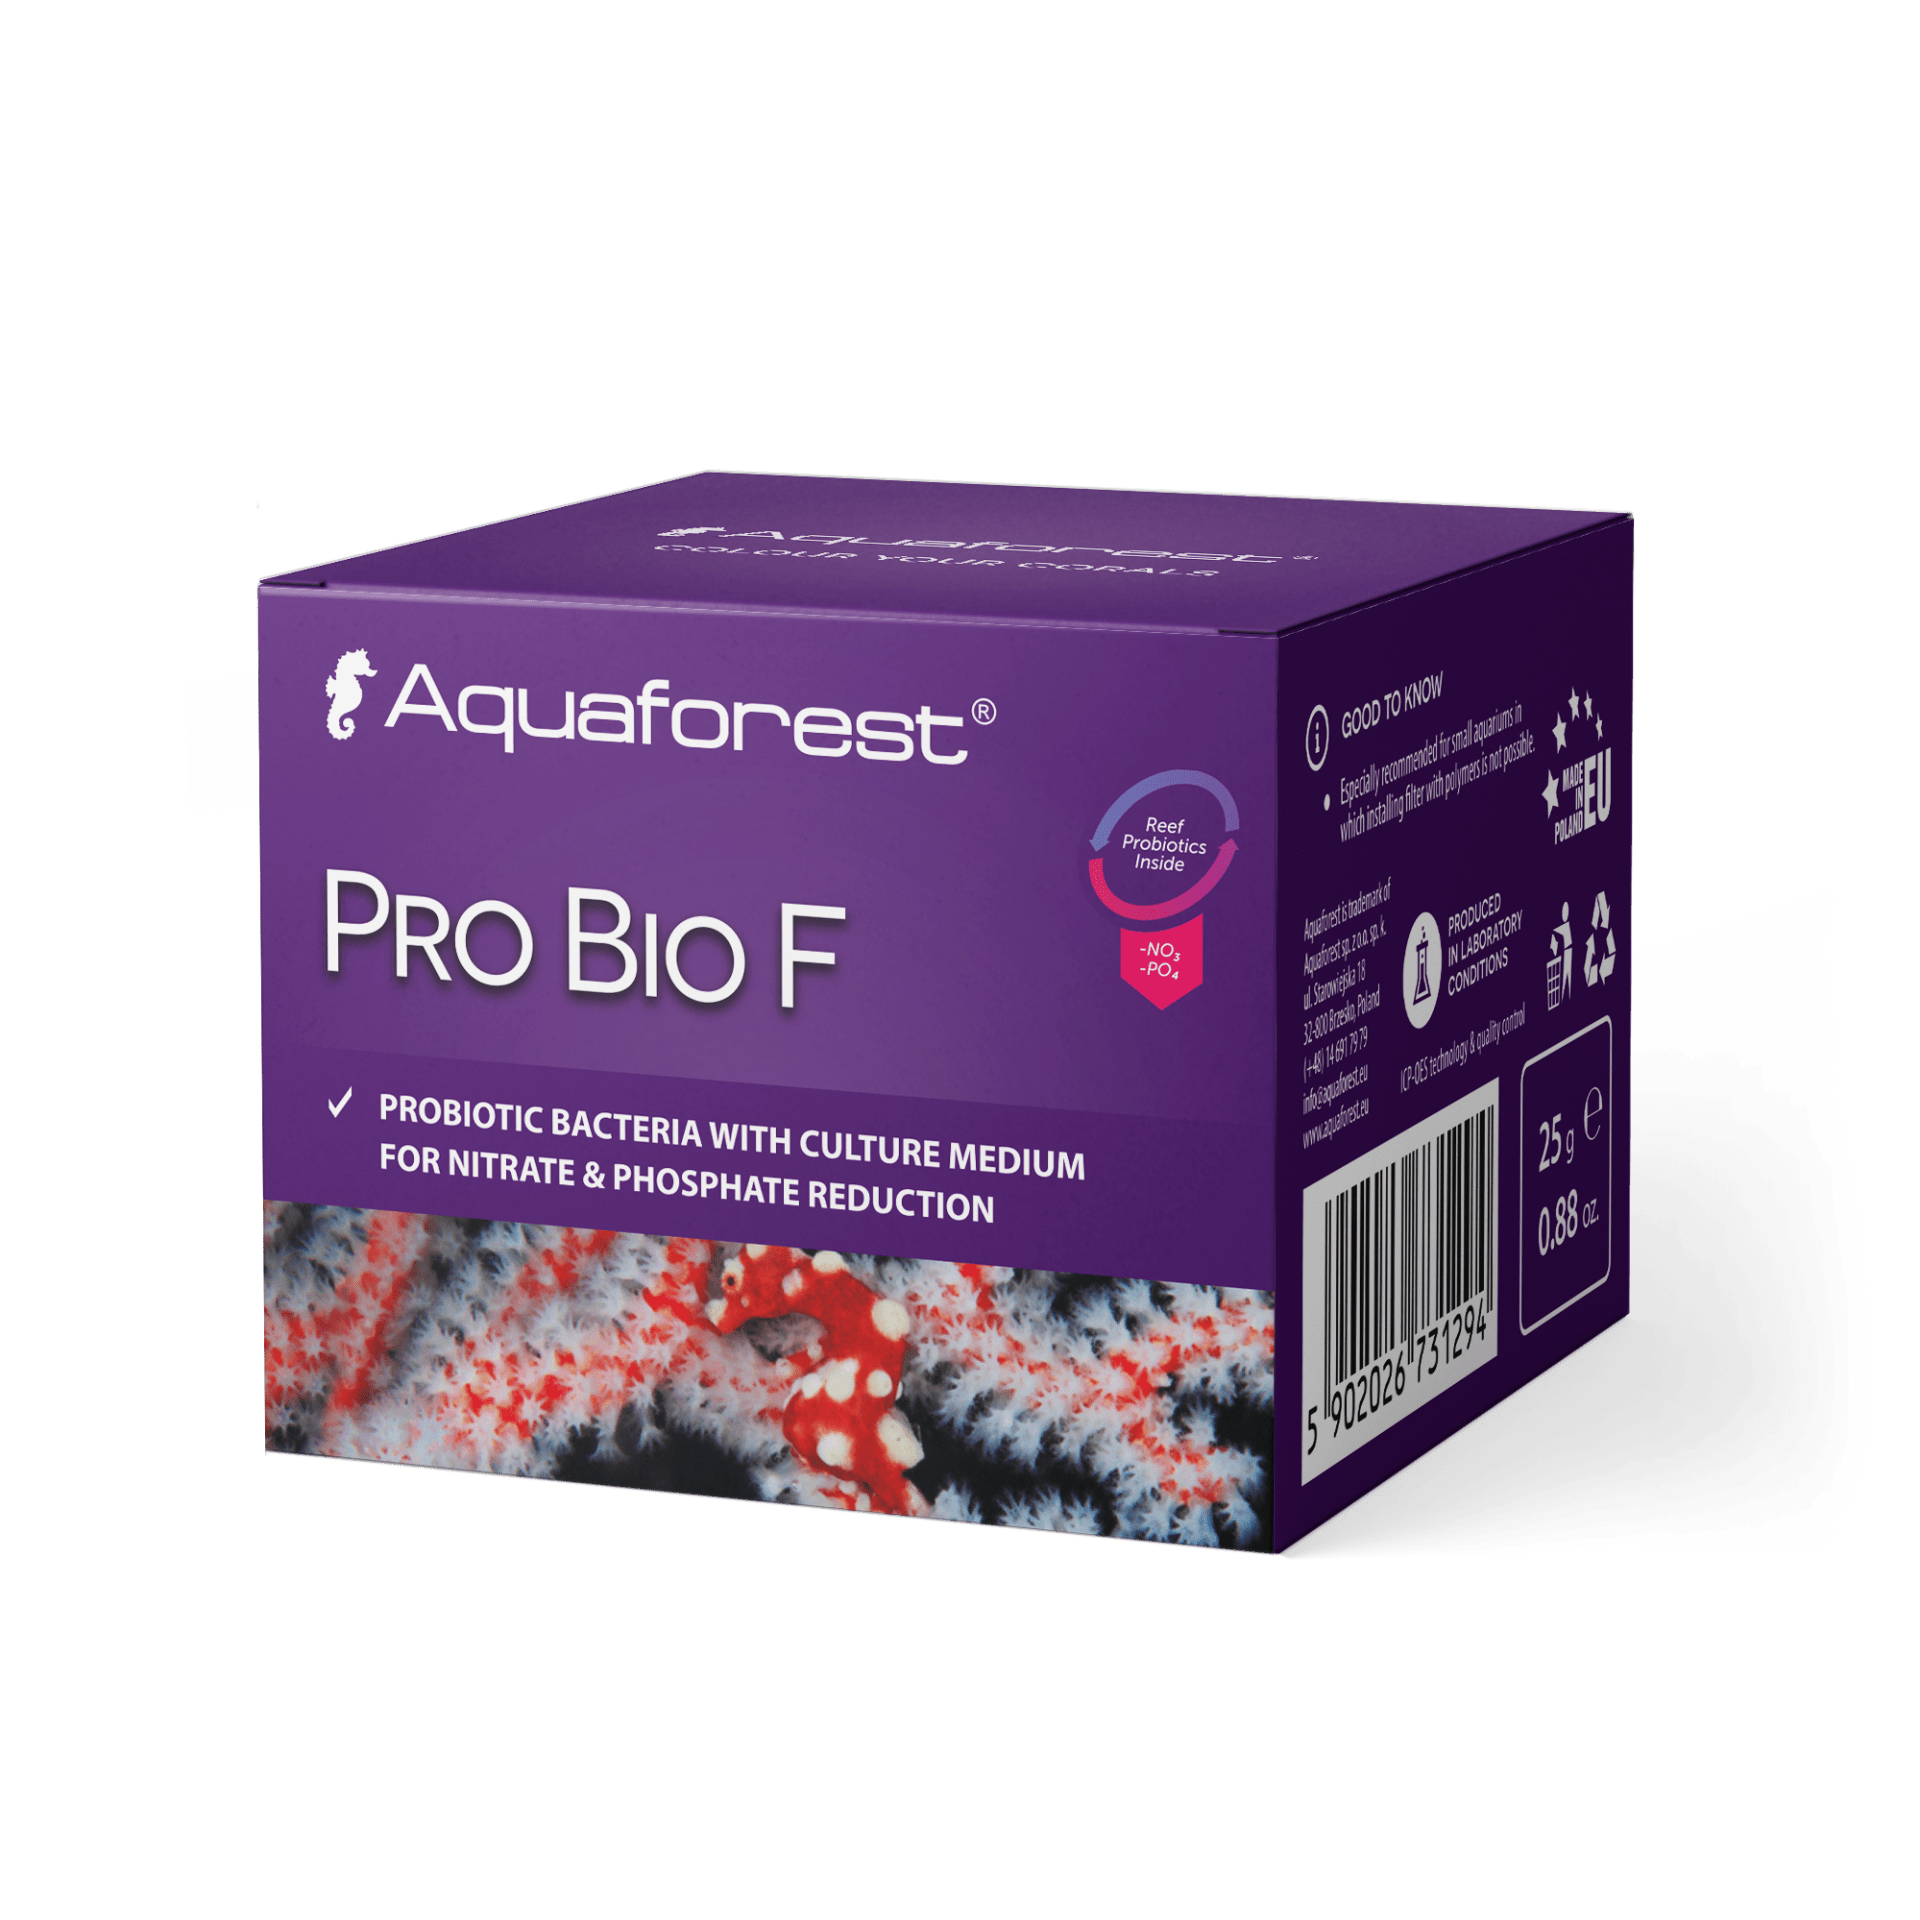 Aquaforest ProBioF 25 g